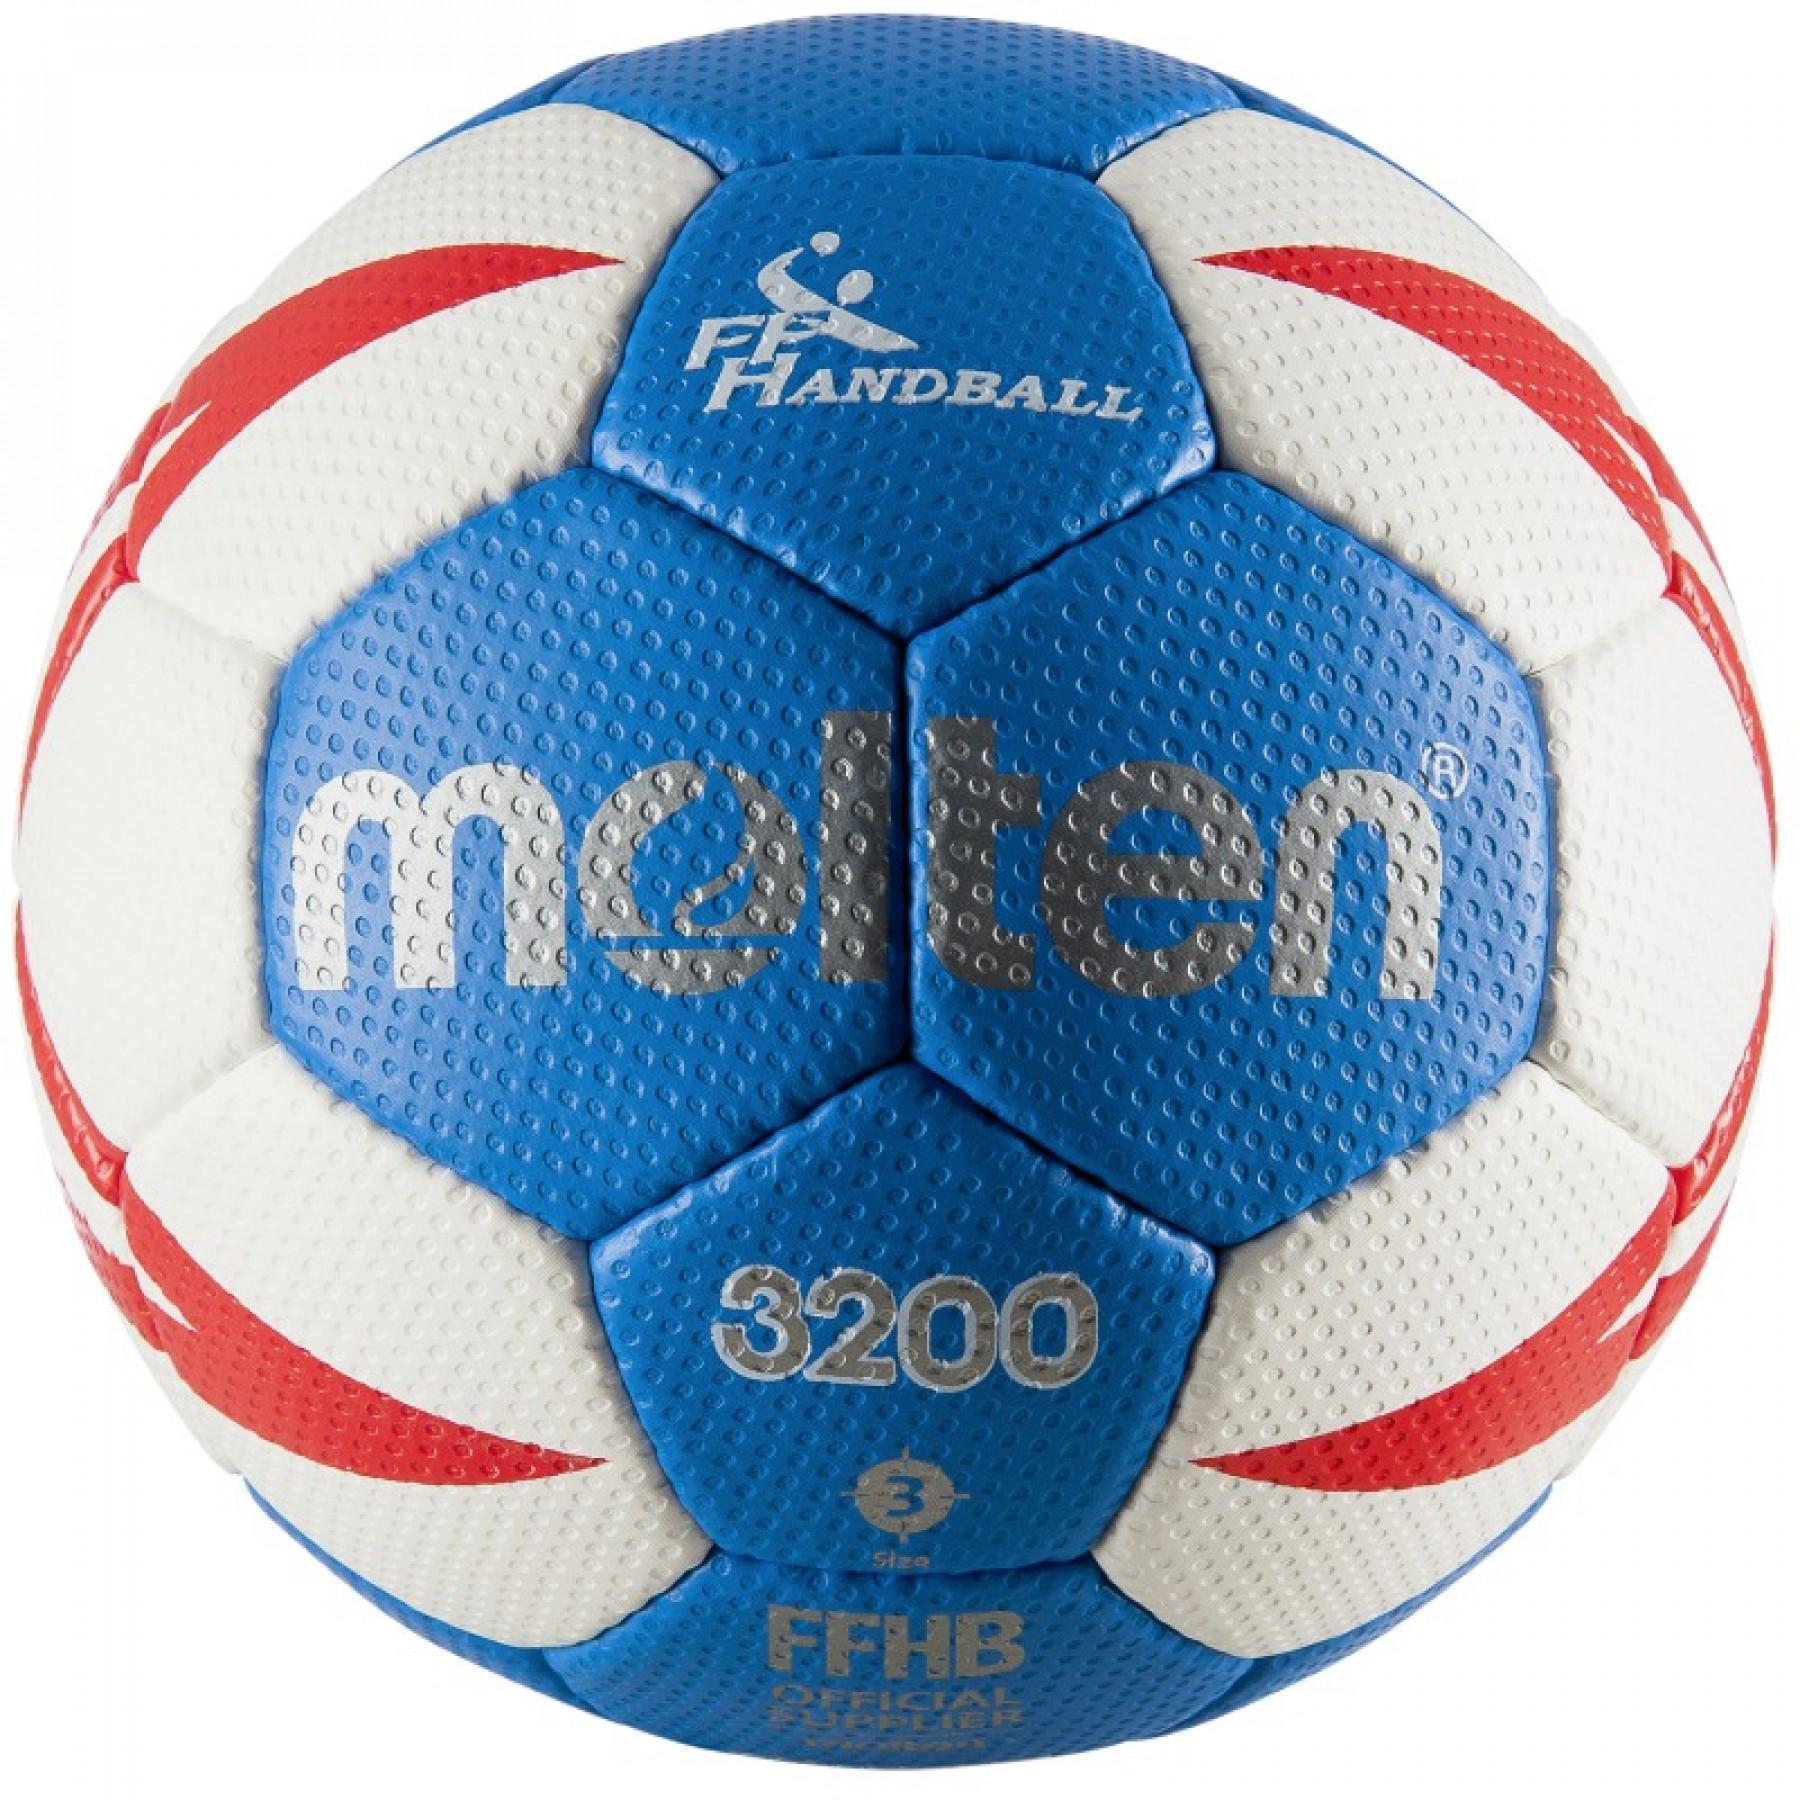 Pak van 10 trainingsballen Molten HX3200 FFHB